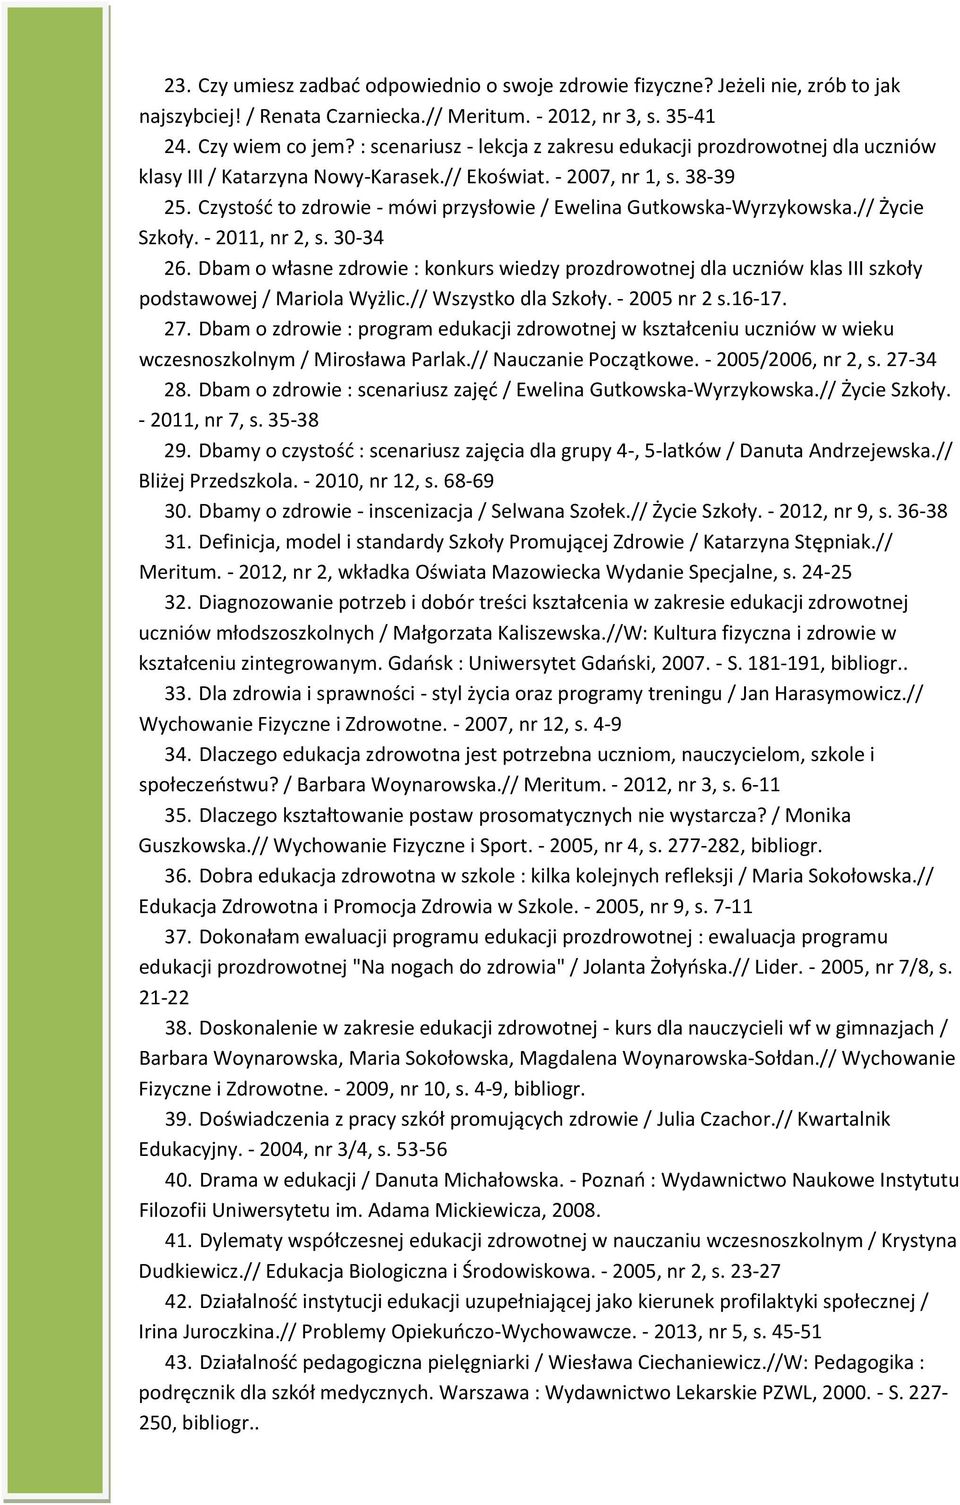 Czystość to zdrowie - mówi przysłowie / Ewelina Gutkowska-Wyrzykowska.// Życie Szkoły. - 2011, nr 2, s. 30-34 26.